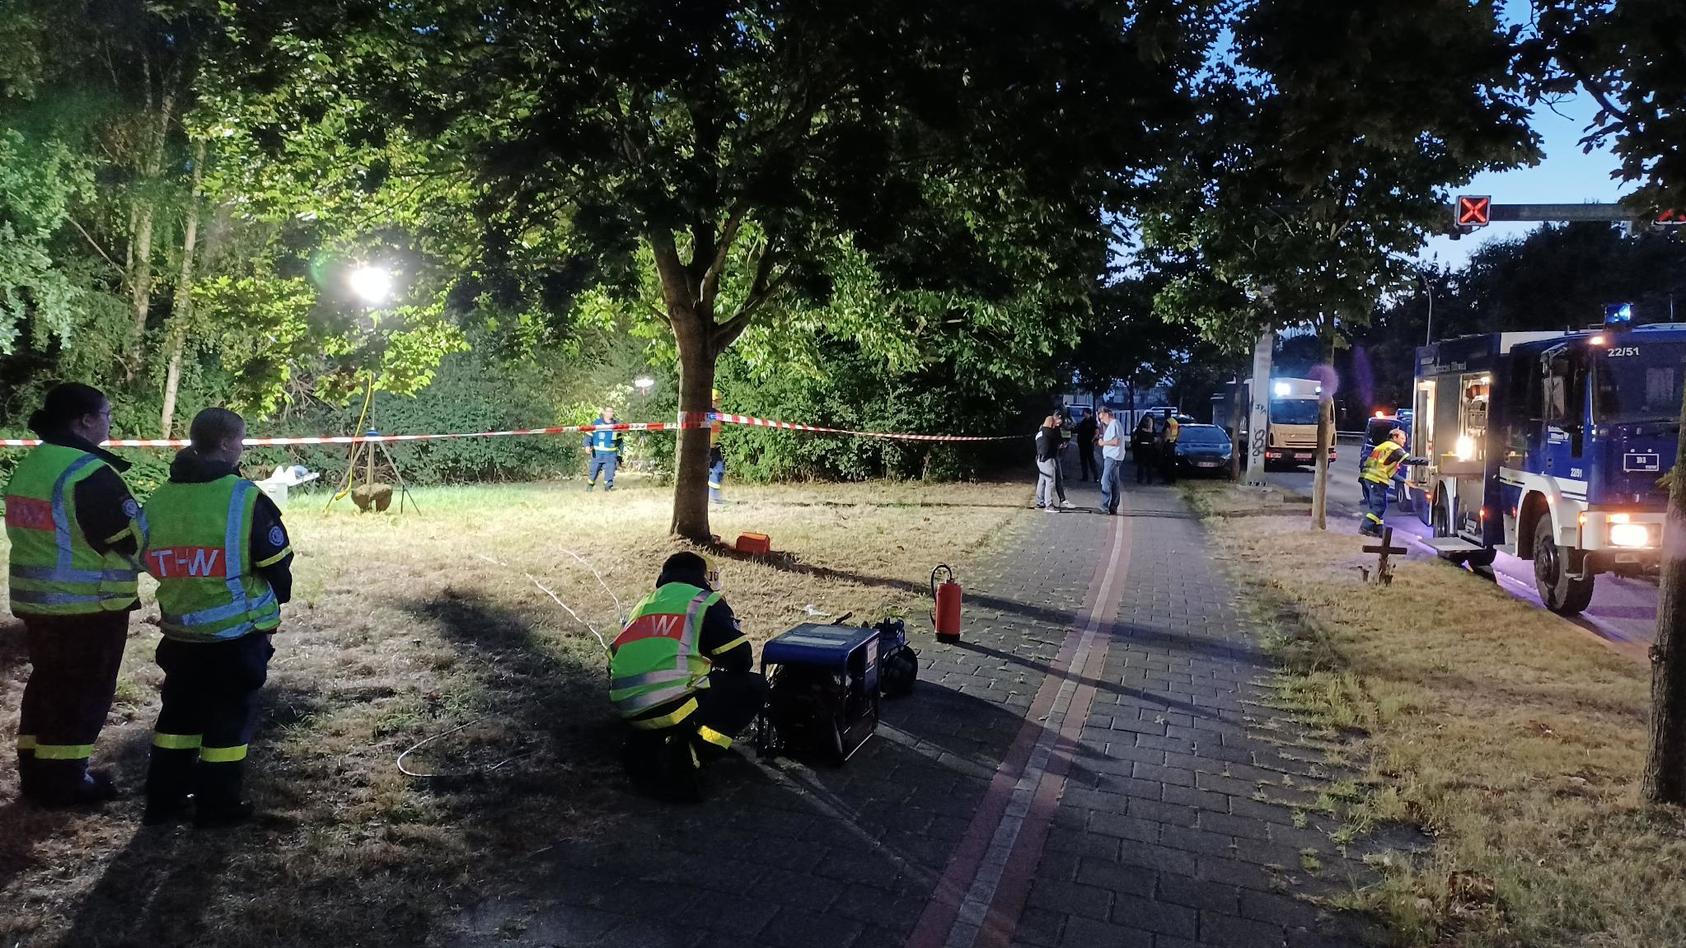 05.09.2022, Bremerhaven: Ein Passant hat am Montag in Bremerhaven im Ortsteil Geestemünde unweit des Flusses Geeste einen Leichnam entdeckt. Die Kriminalpolizei hat die Ermittlungen aufgenomme. Foto: ---/dpa +++ dpa-Bildfunk +++